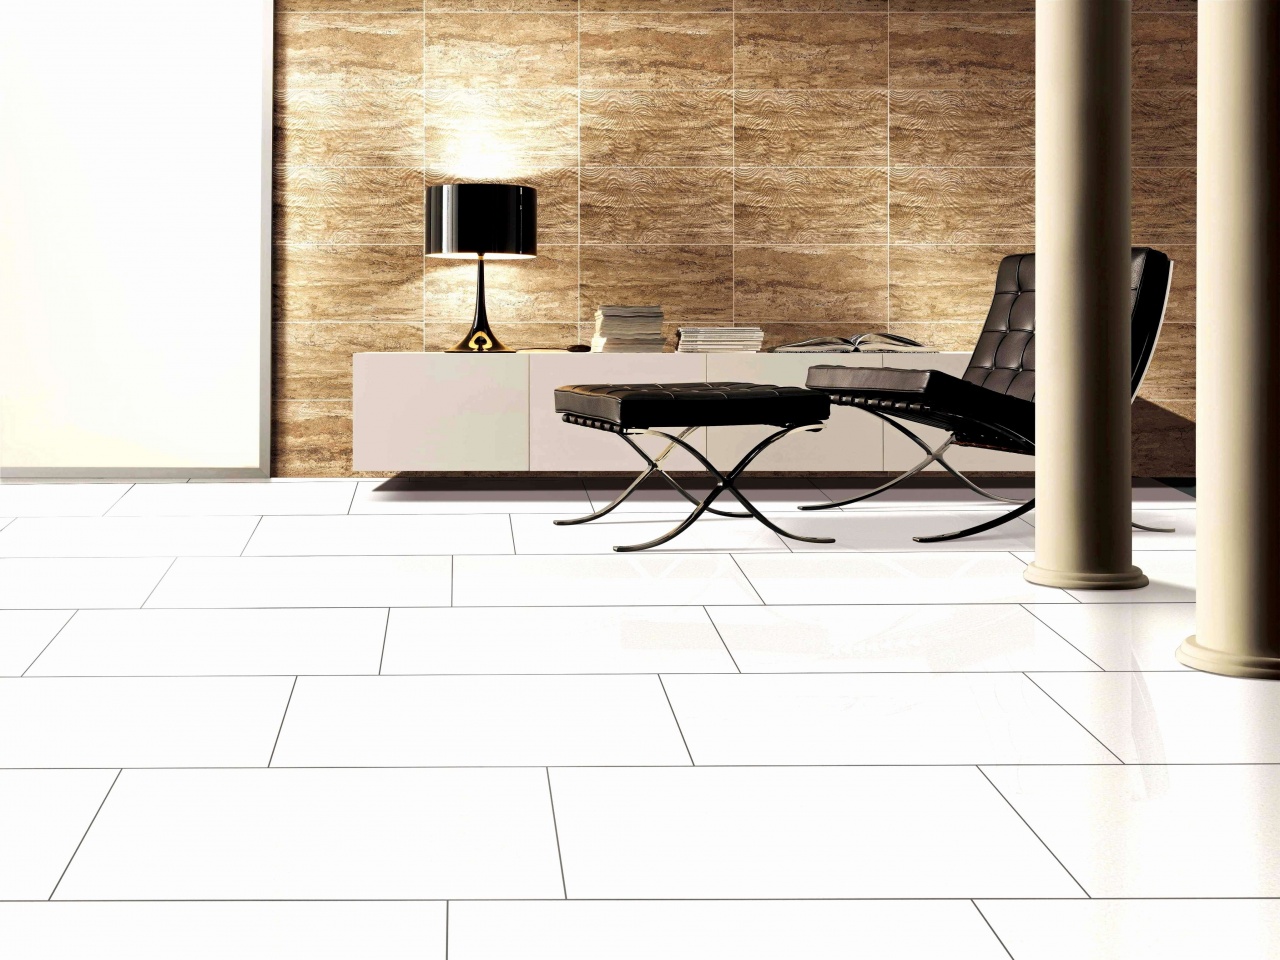 type of tile for shower shaw floor tile elegant new tile floor mosaic bathroom 0d from type of tile for shower